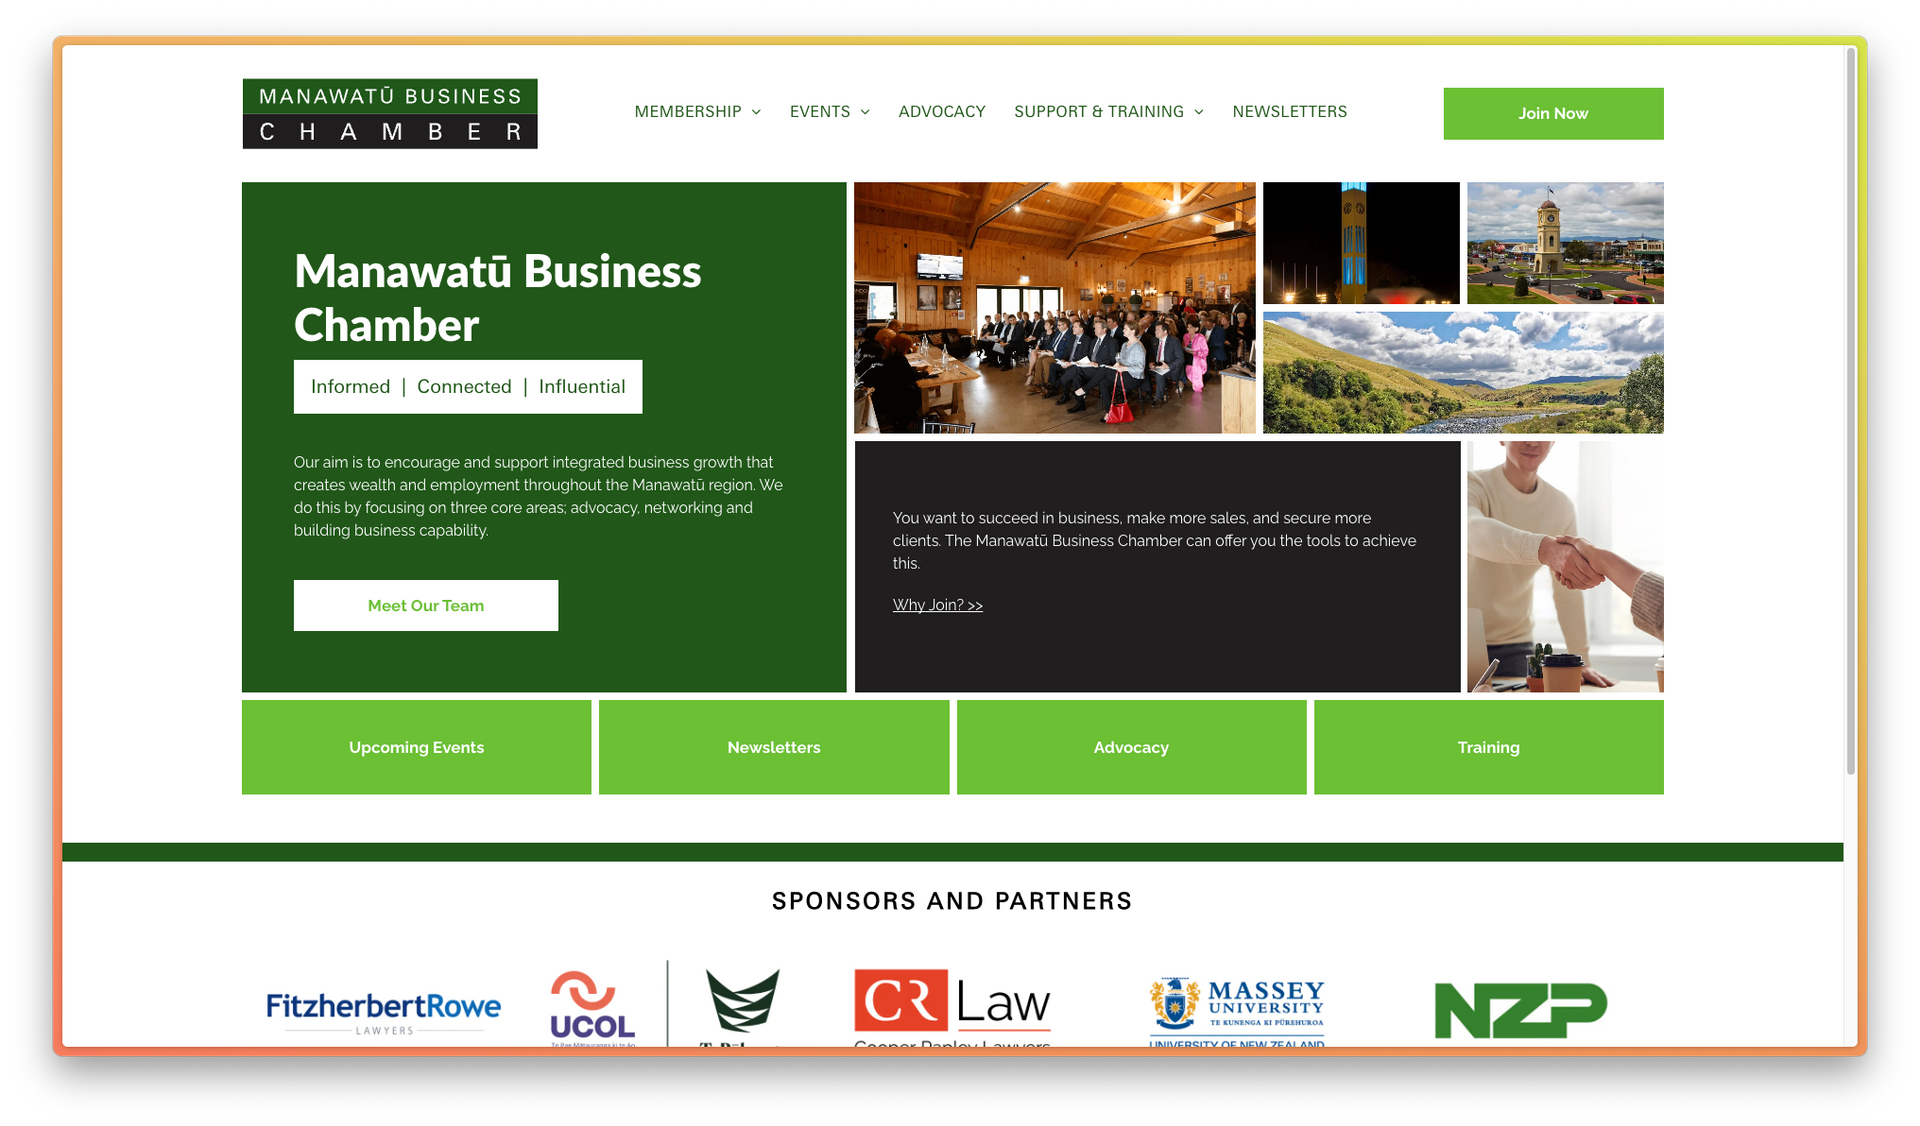 Manawatū Business Chamber Website Design